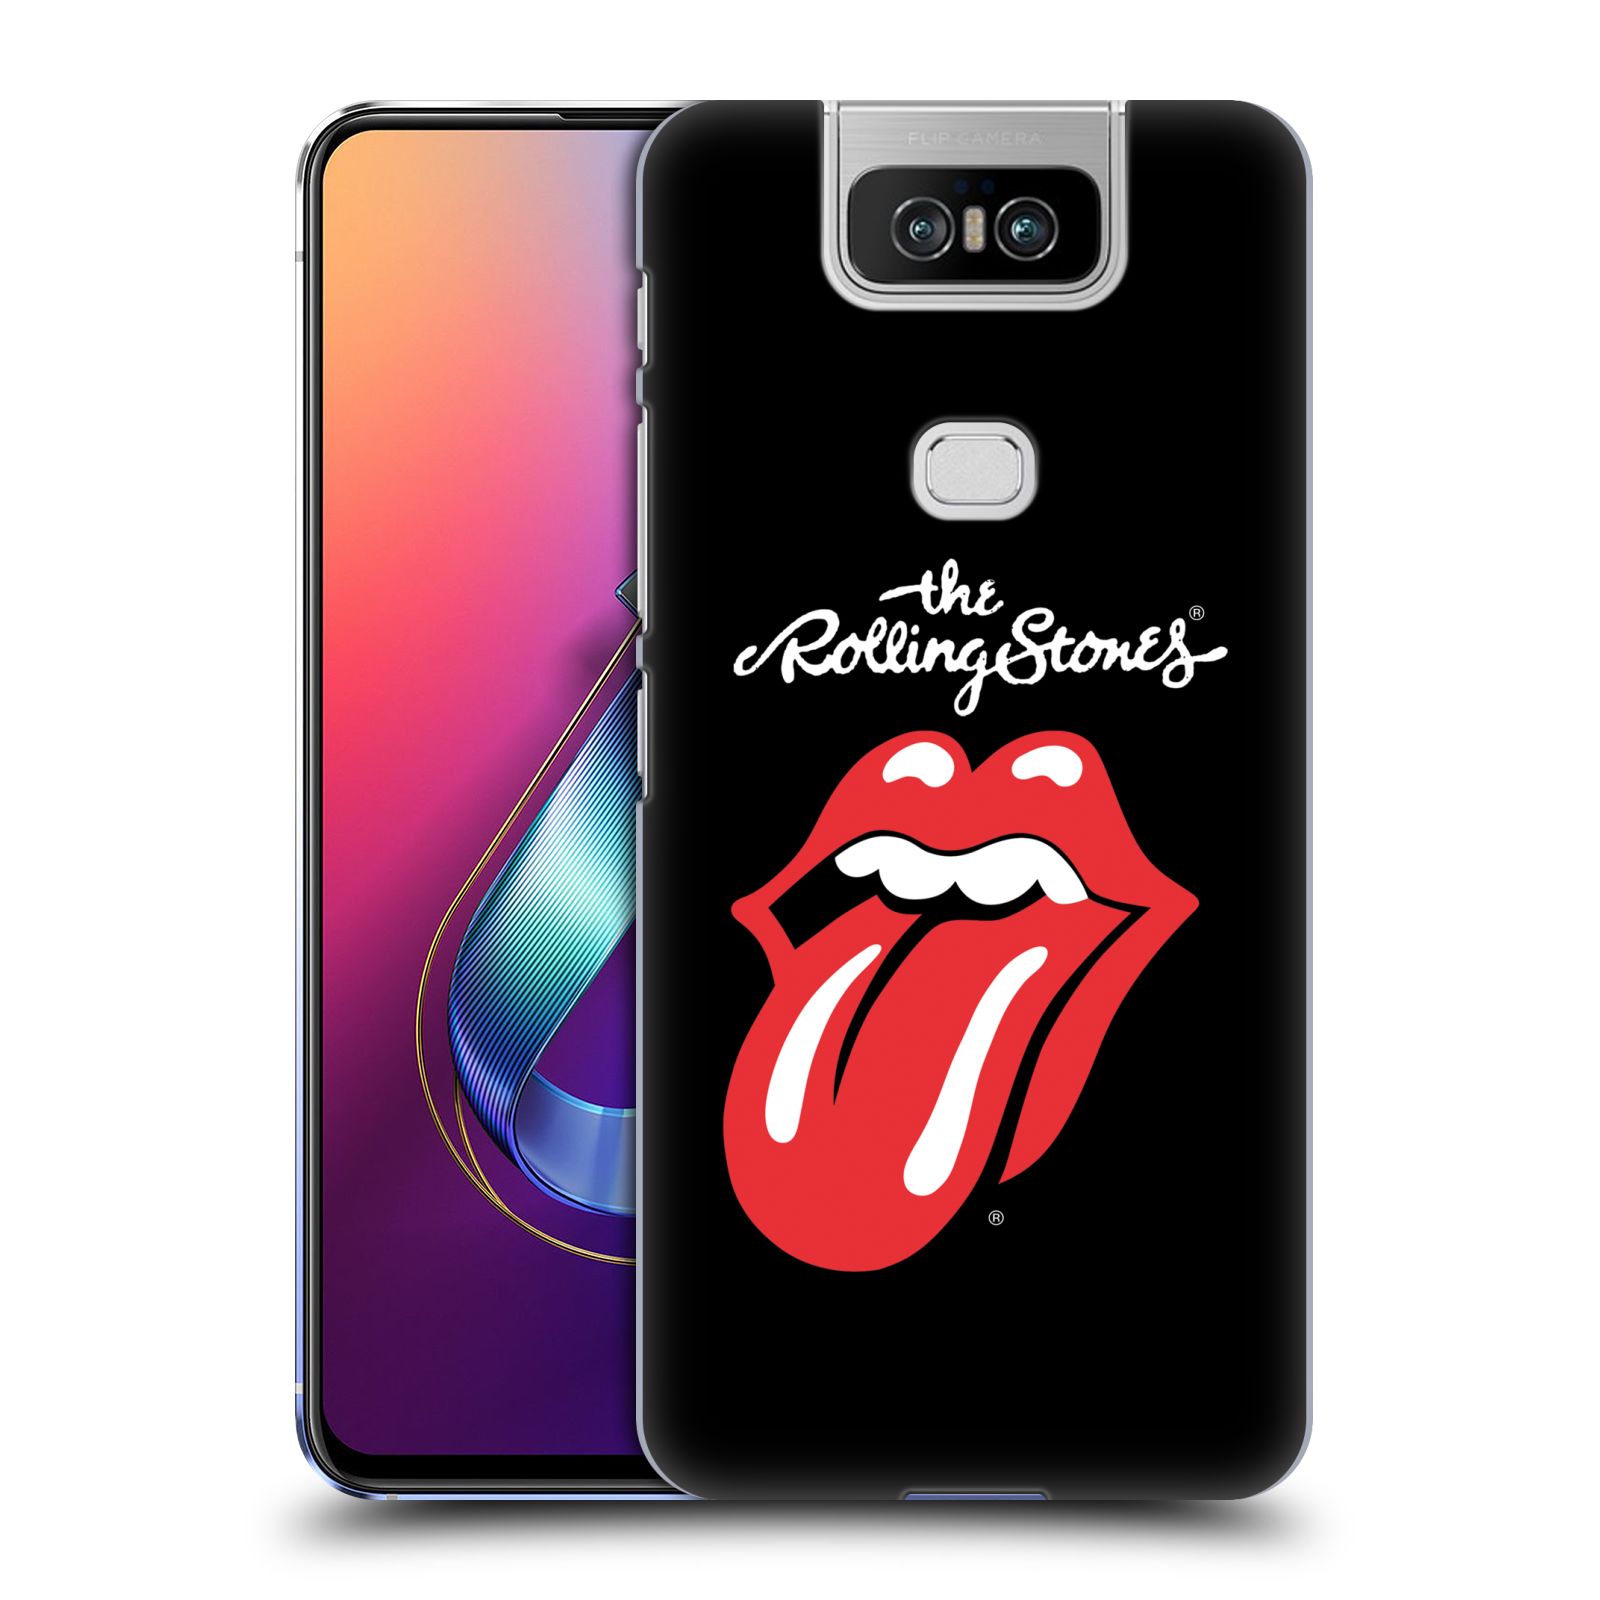 Pouzdro na mobil Asus Zenfone 6 ZS630KL - HEAD CASE - rocková skupina Rolling Stones znak černá a červená